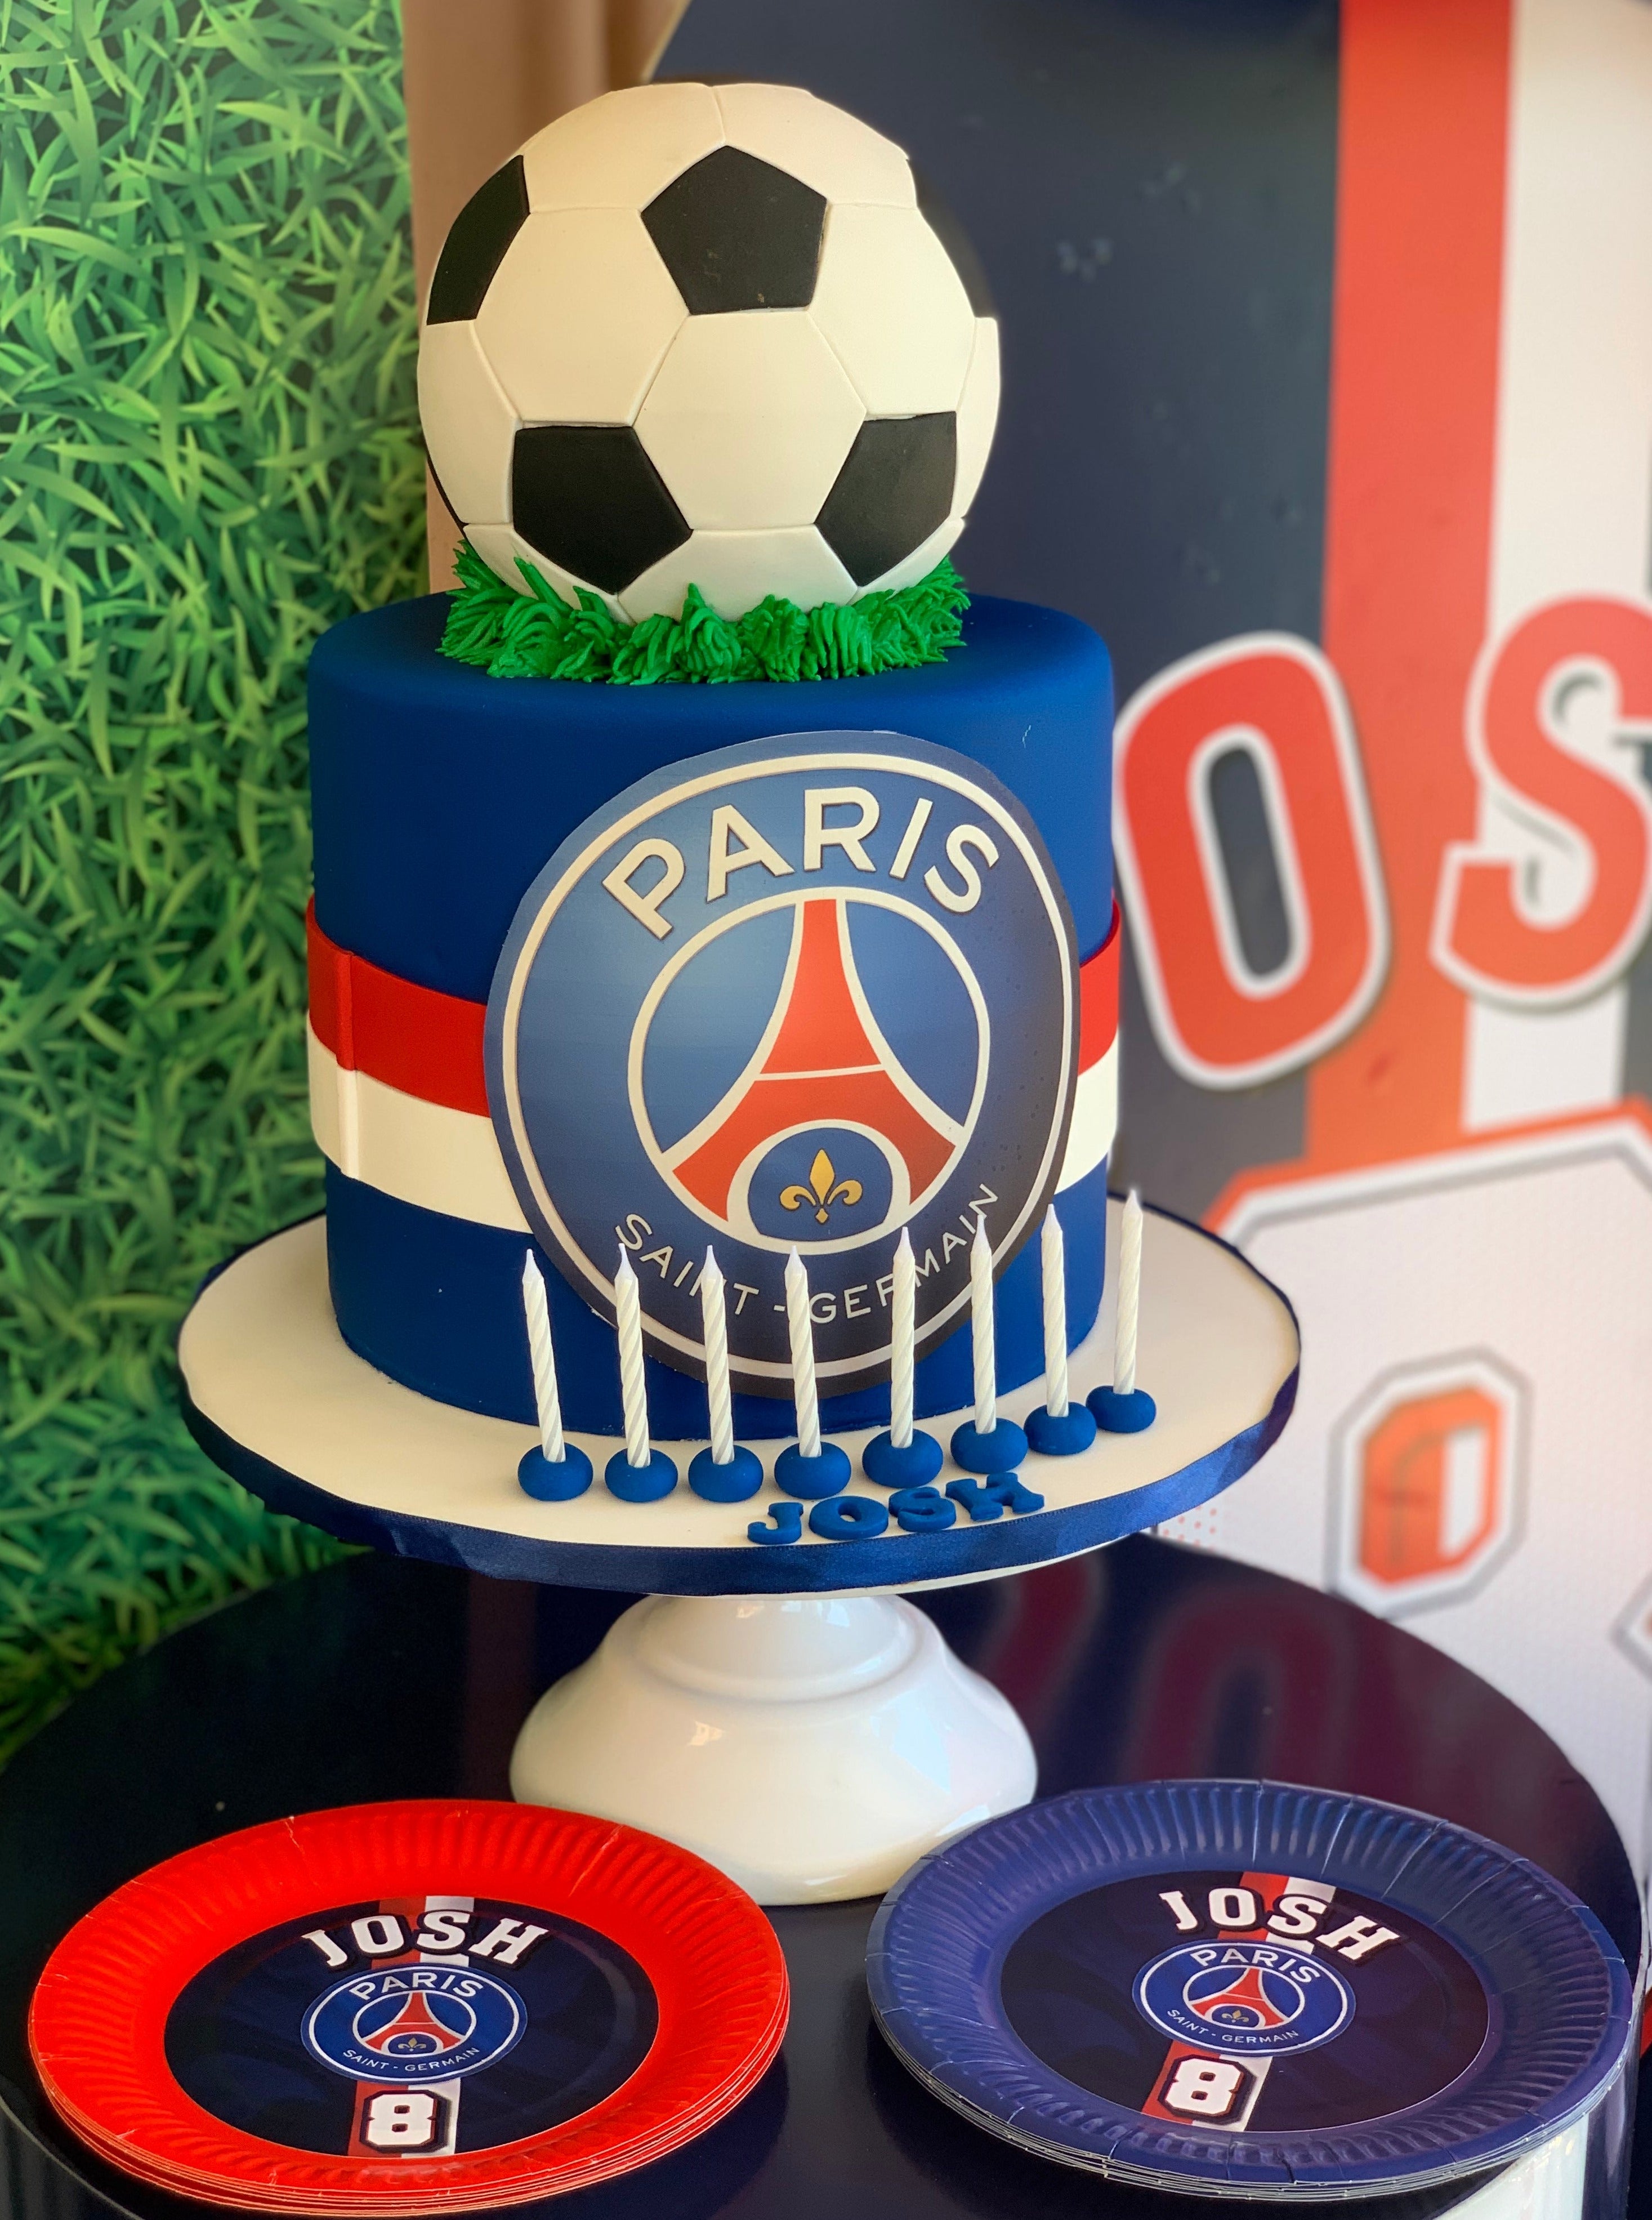 Soccer - Paris Saint Germain – Lily Young Designs